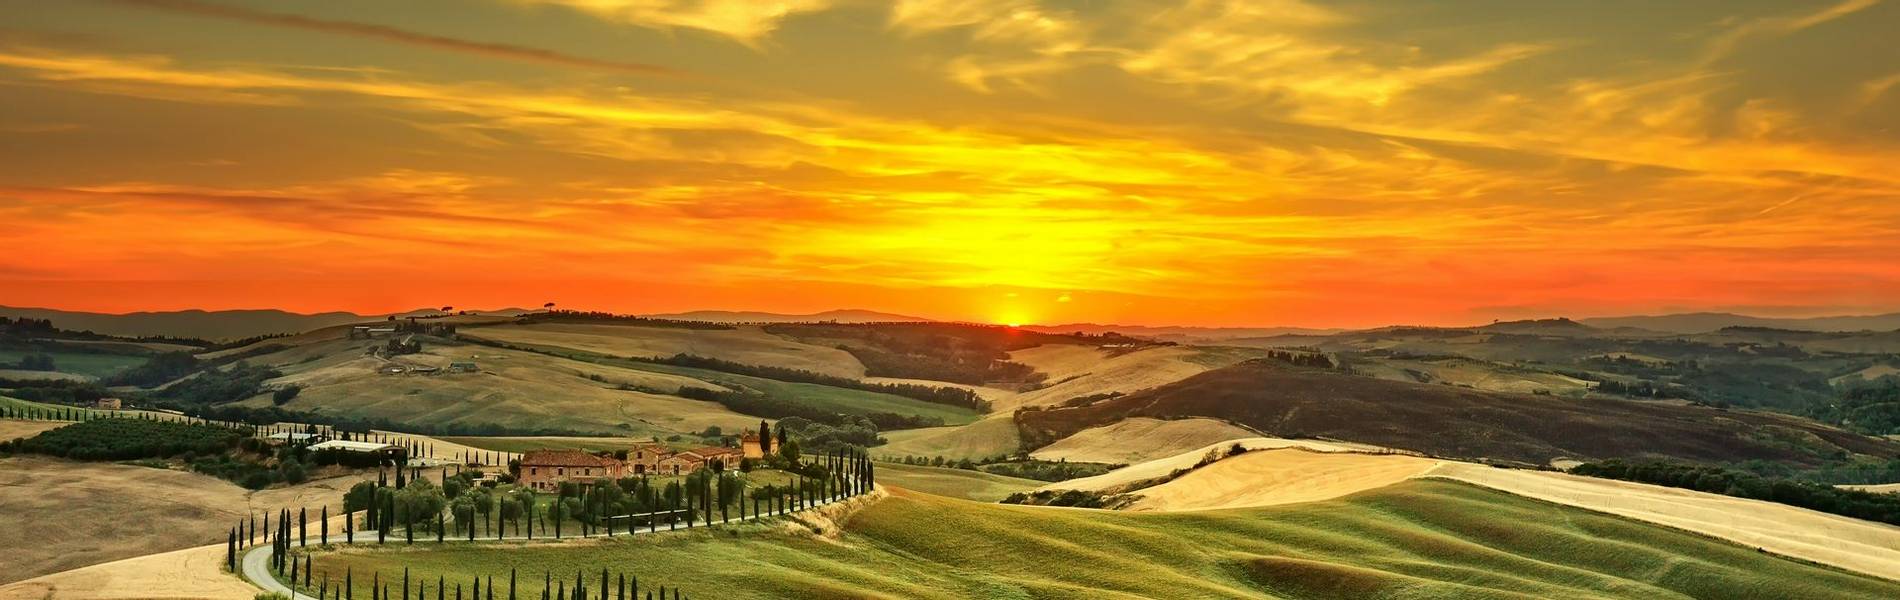 Tuscany & Umbria Intro Image.jpg